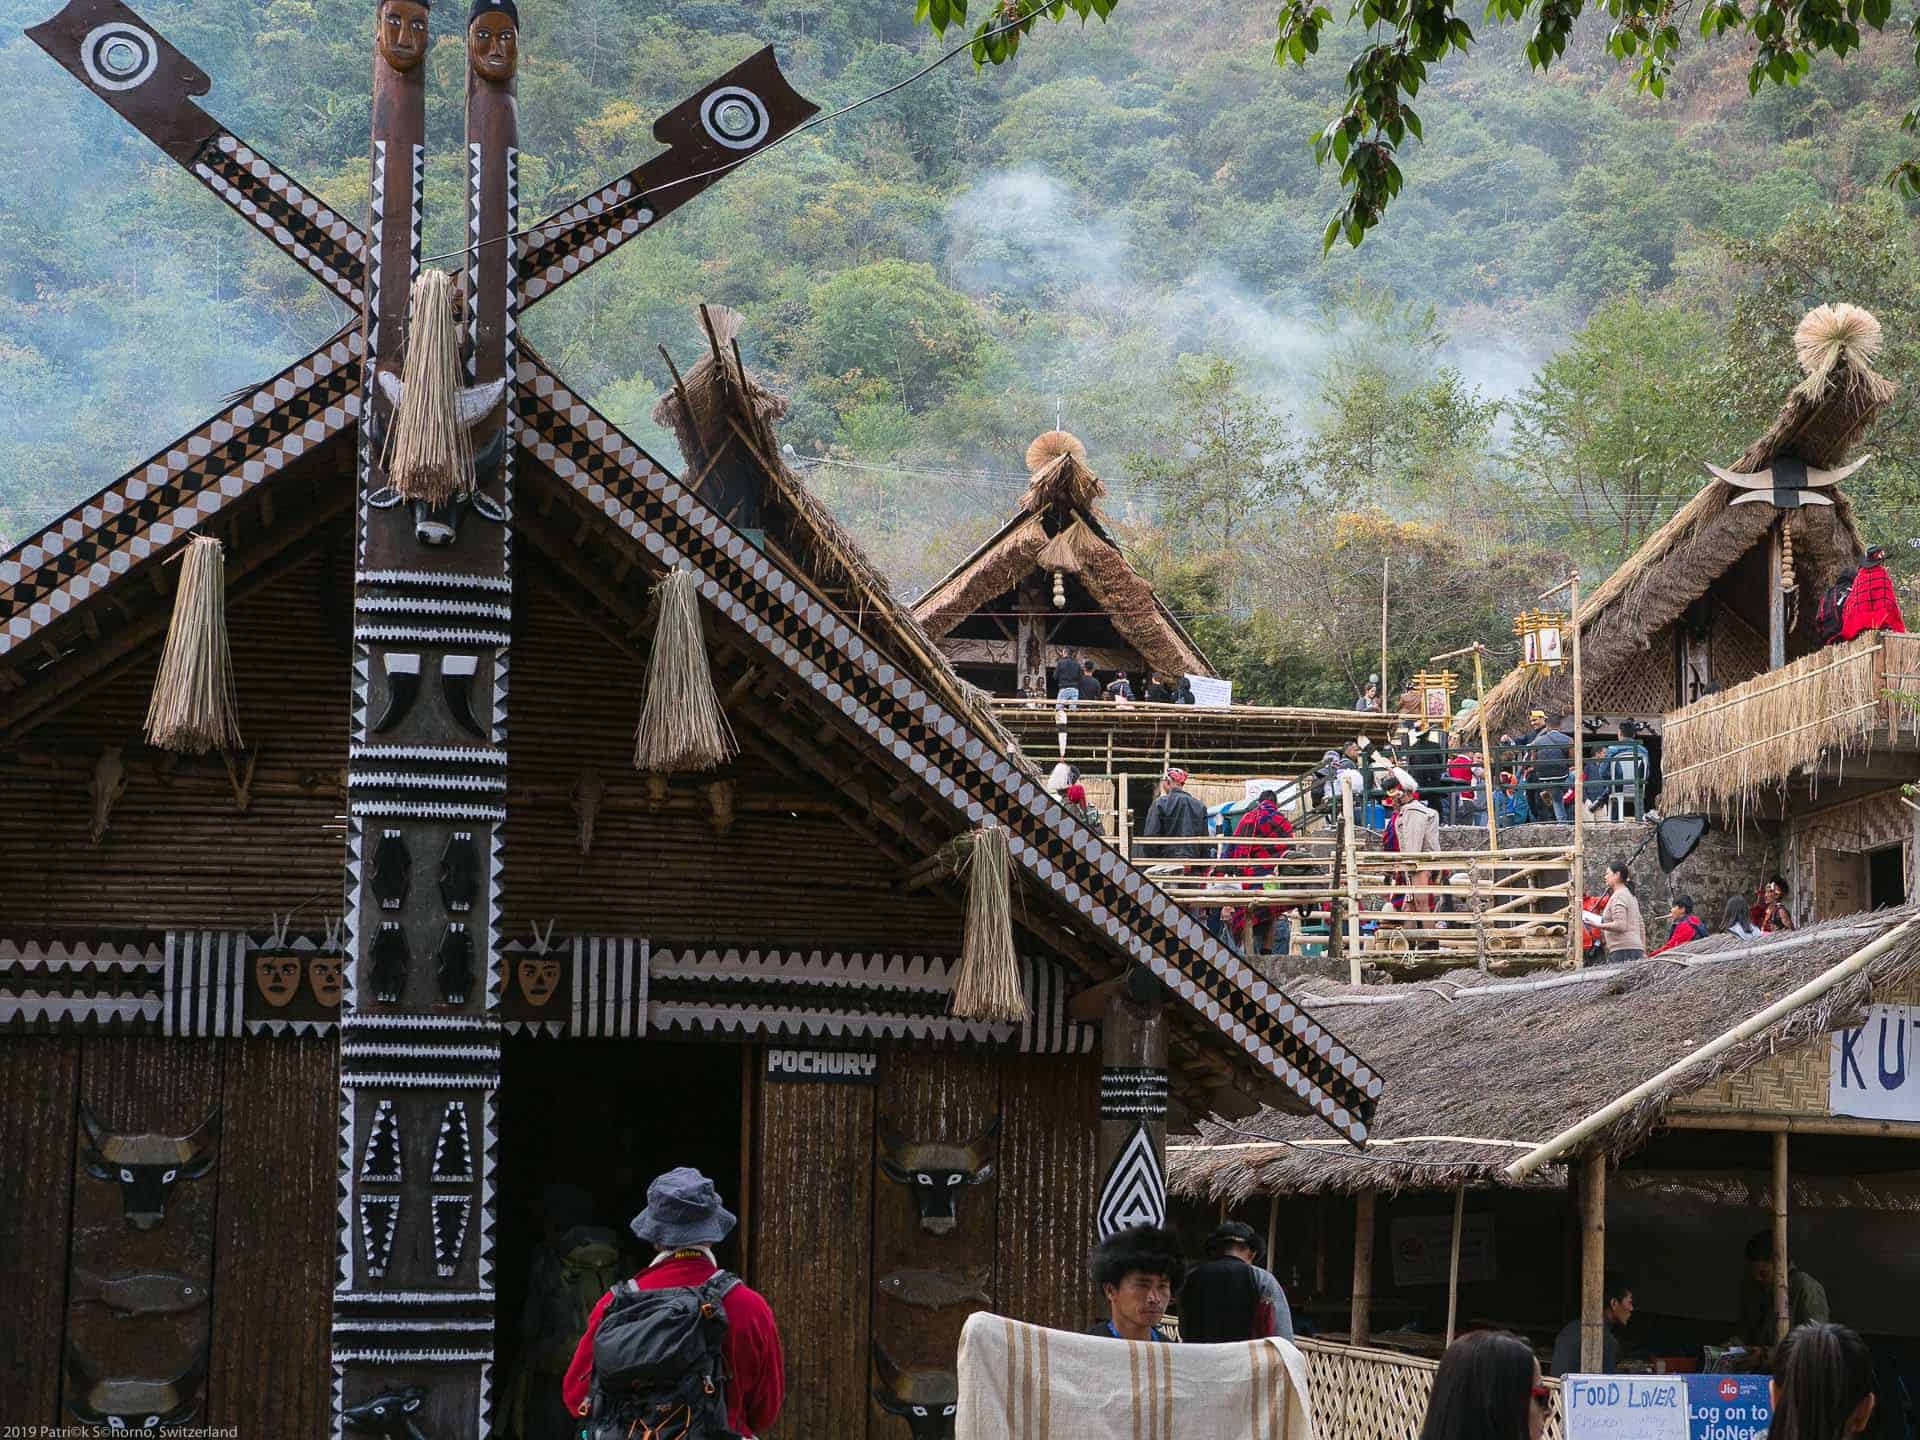 Bamboo Retreat Hotel - image "Nagaland - Reisebericht von Teeplantagen und dem Hornbill Festival - Informationen für die Indien Reise" 89